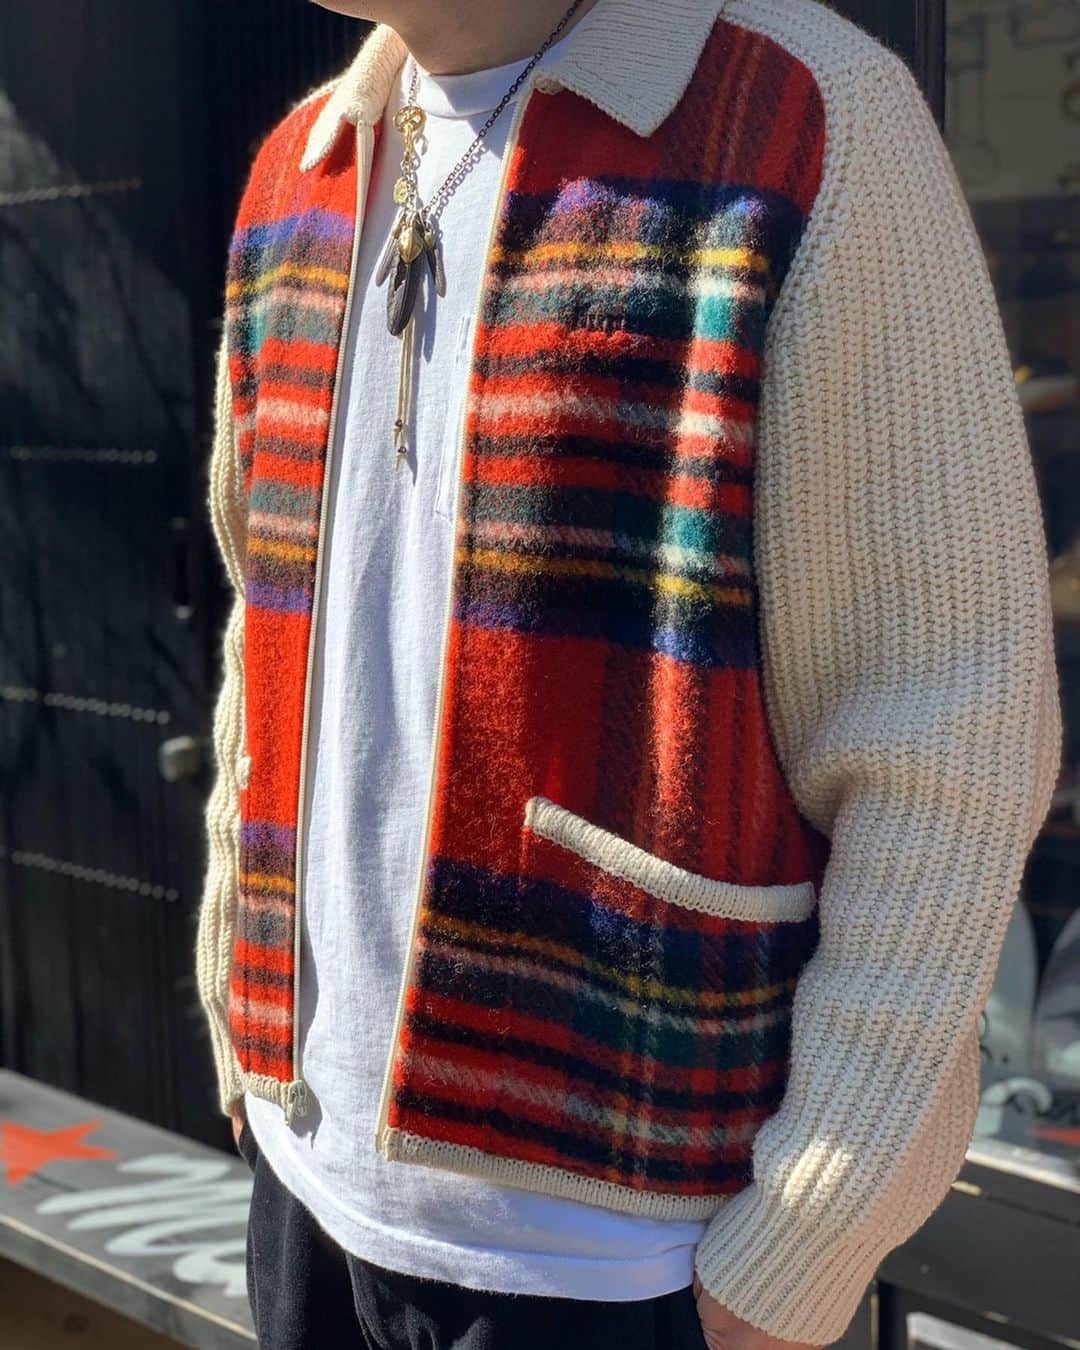 輝く高品質な Supreme Plaid Sweater Zip Front ニット/セーター